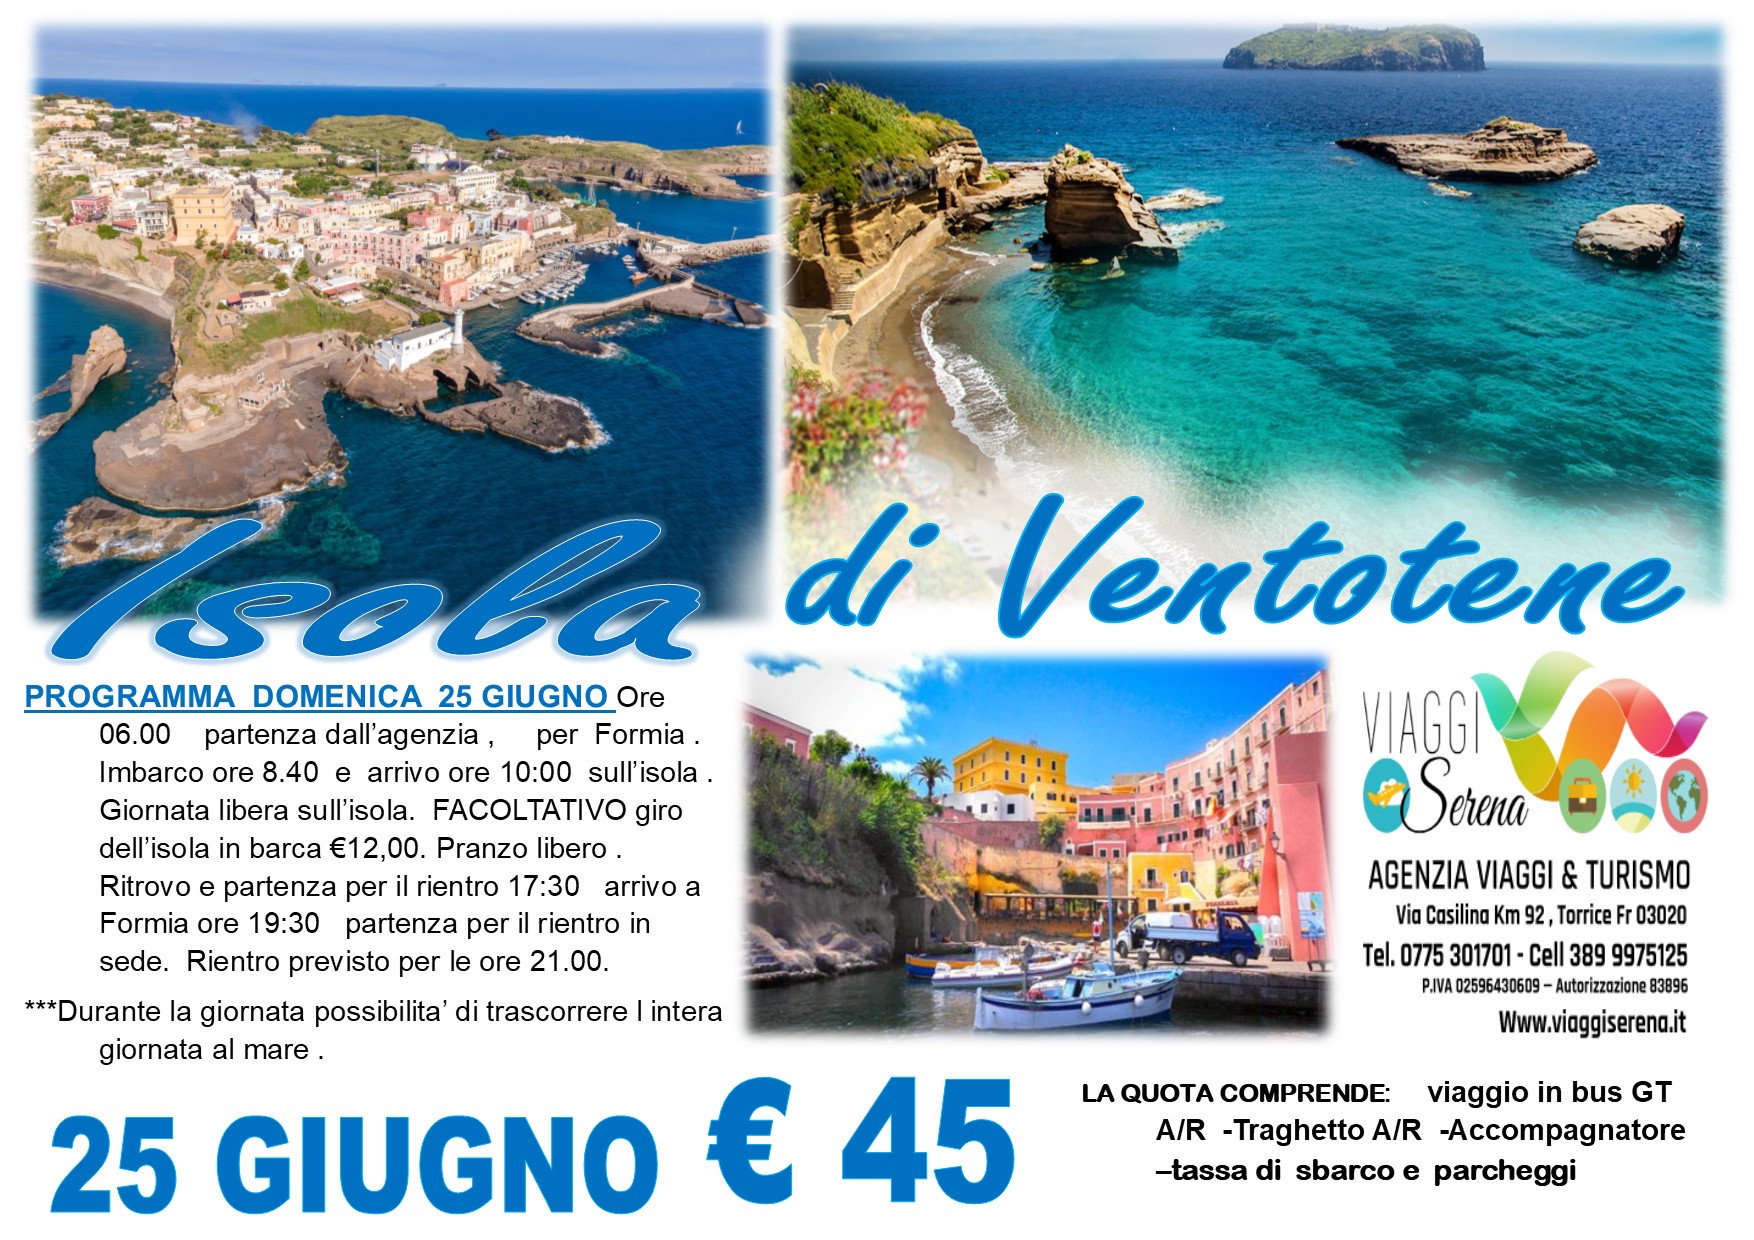 Viaggi di Gruppo: Isola di Ventotene 25 Giugno €45,00